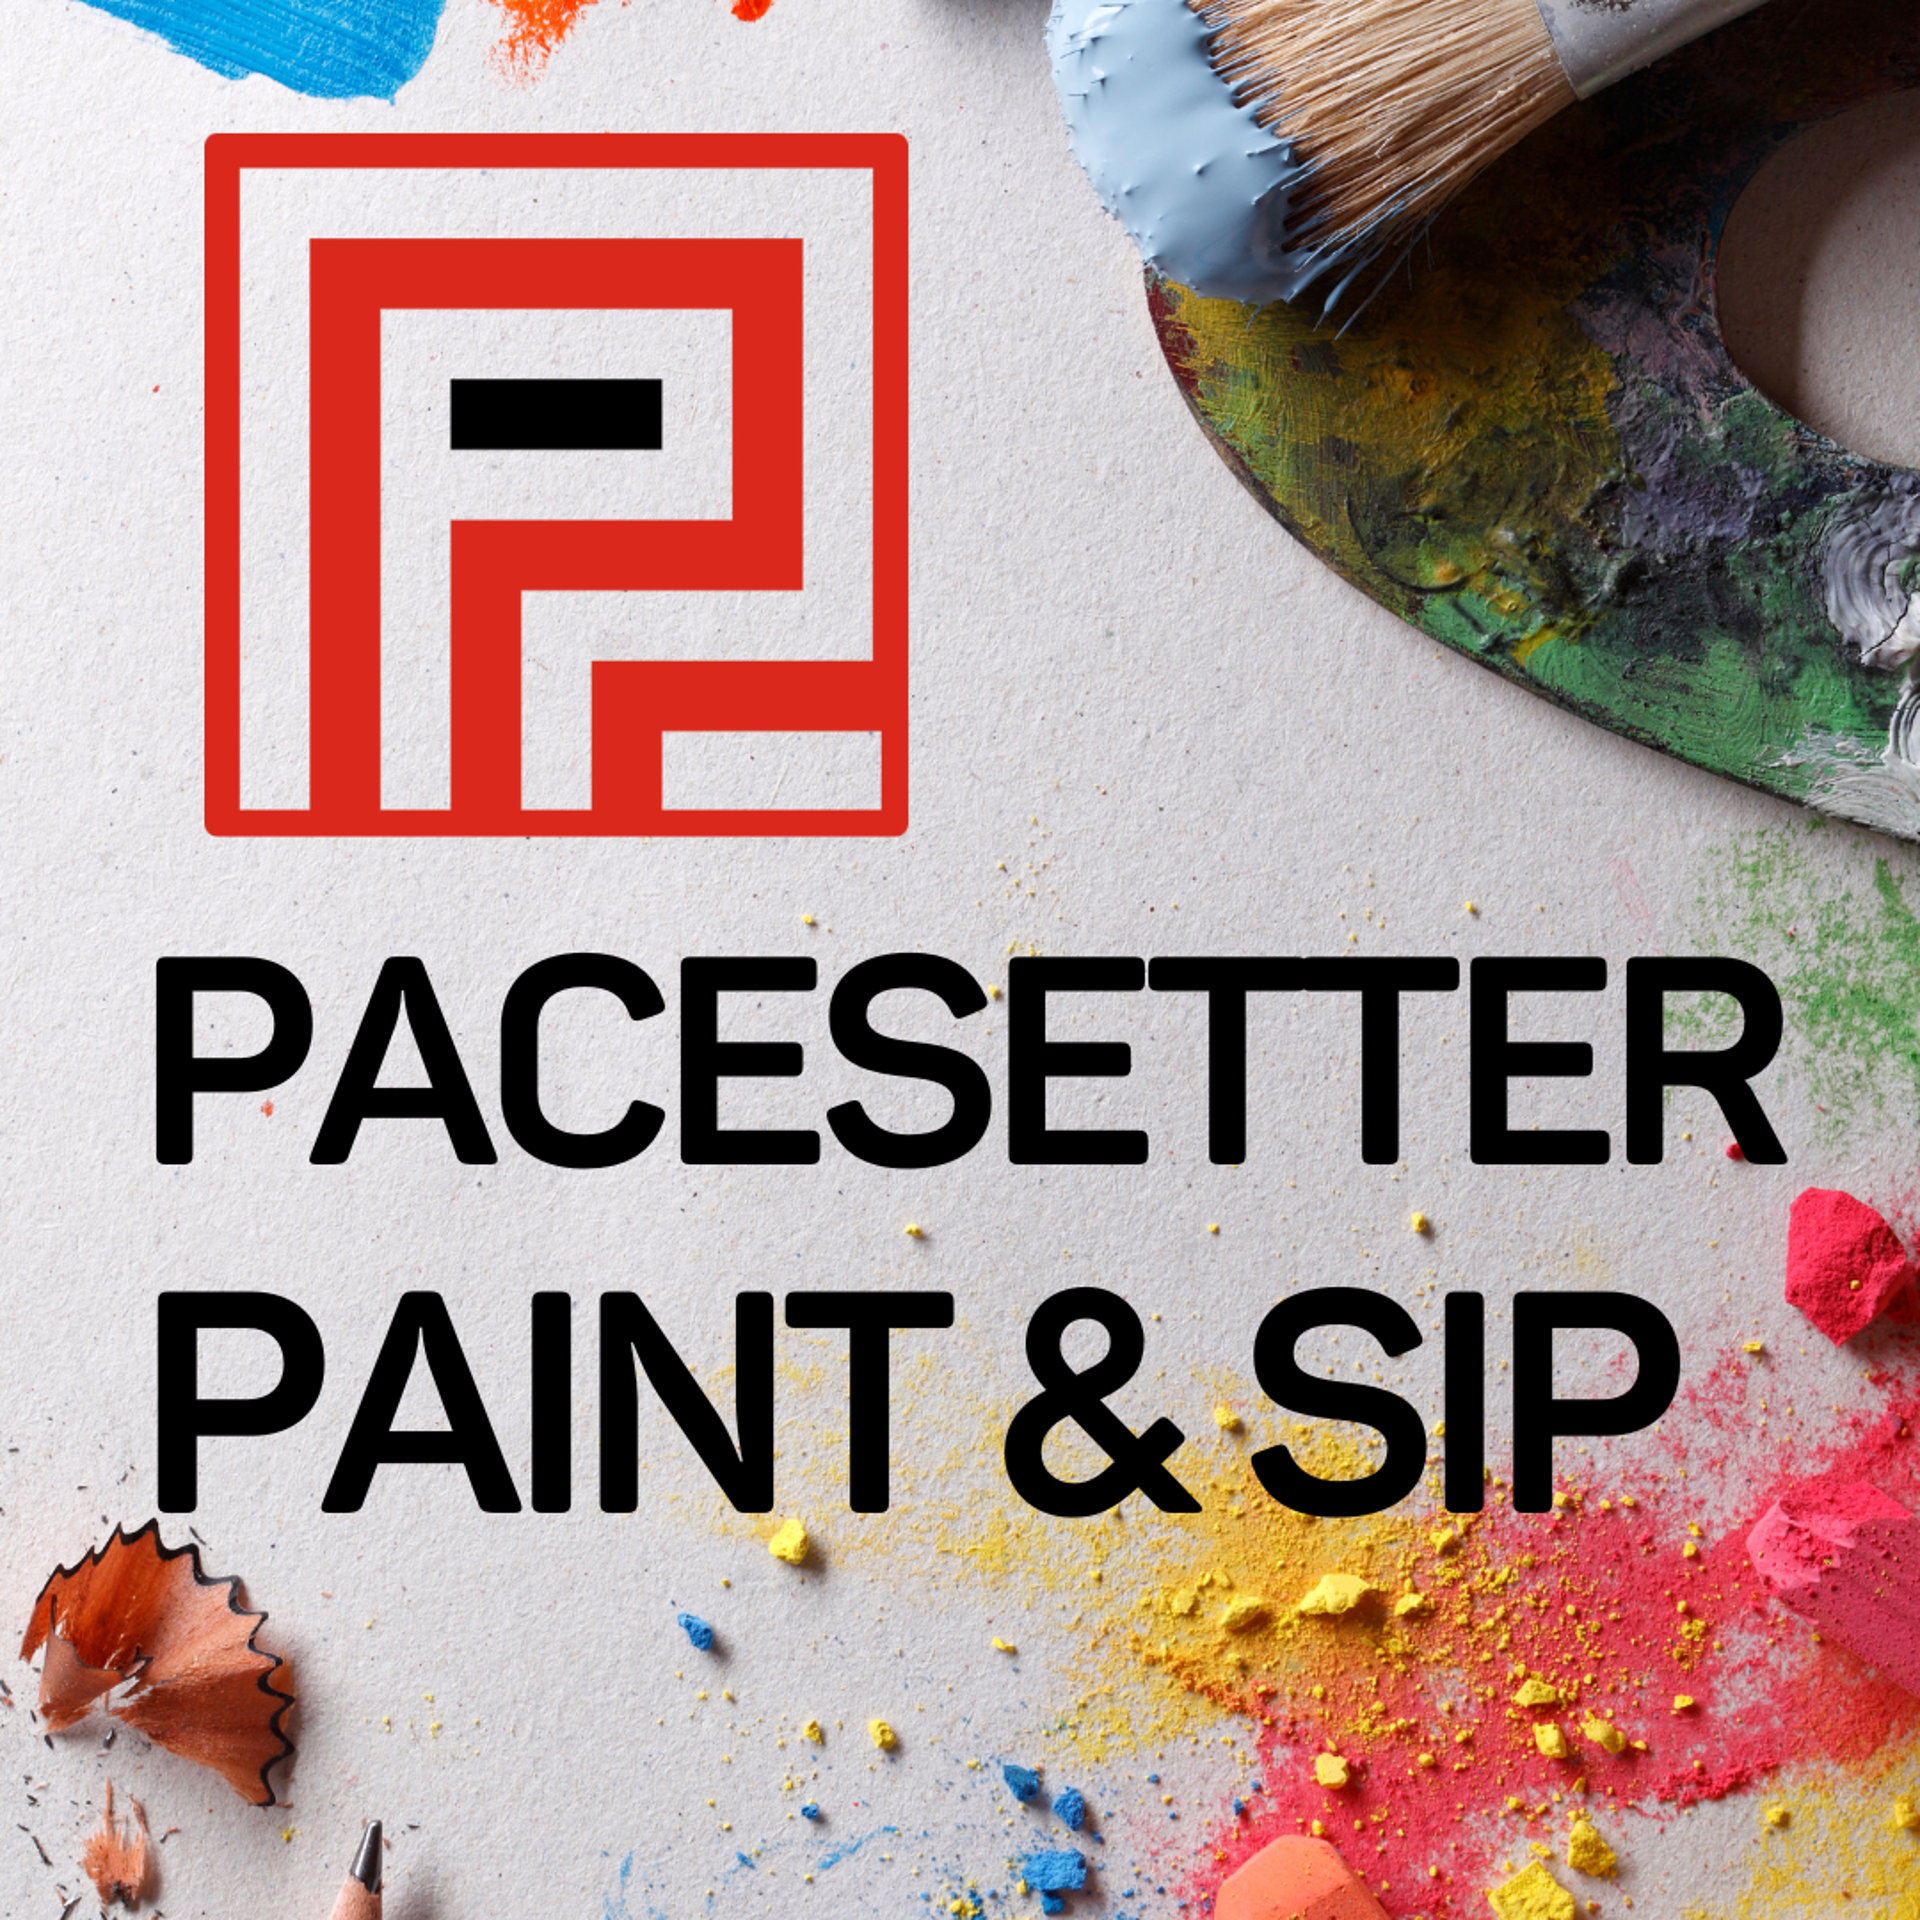 Paint & Sip November 10, 6-8pm